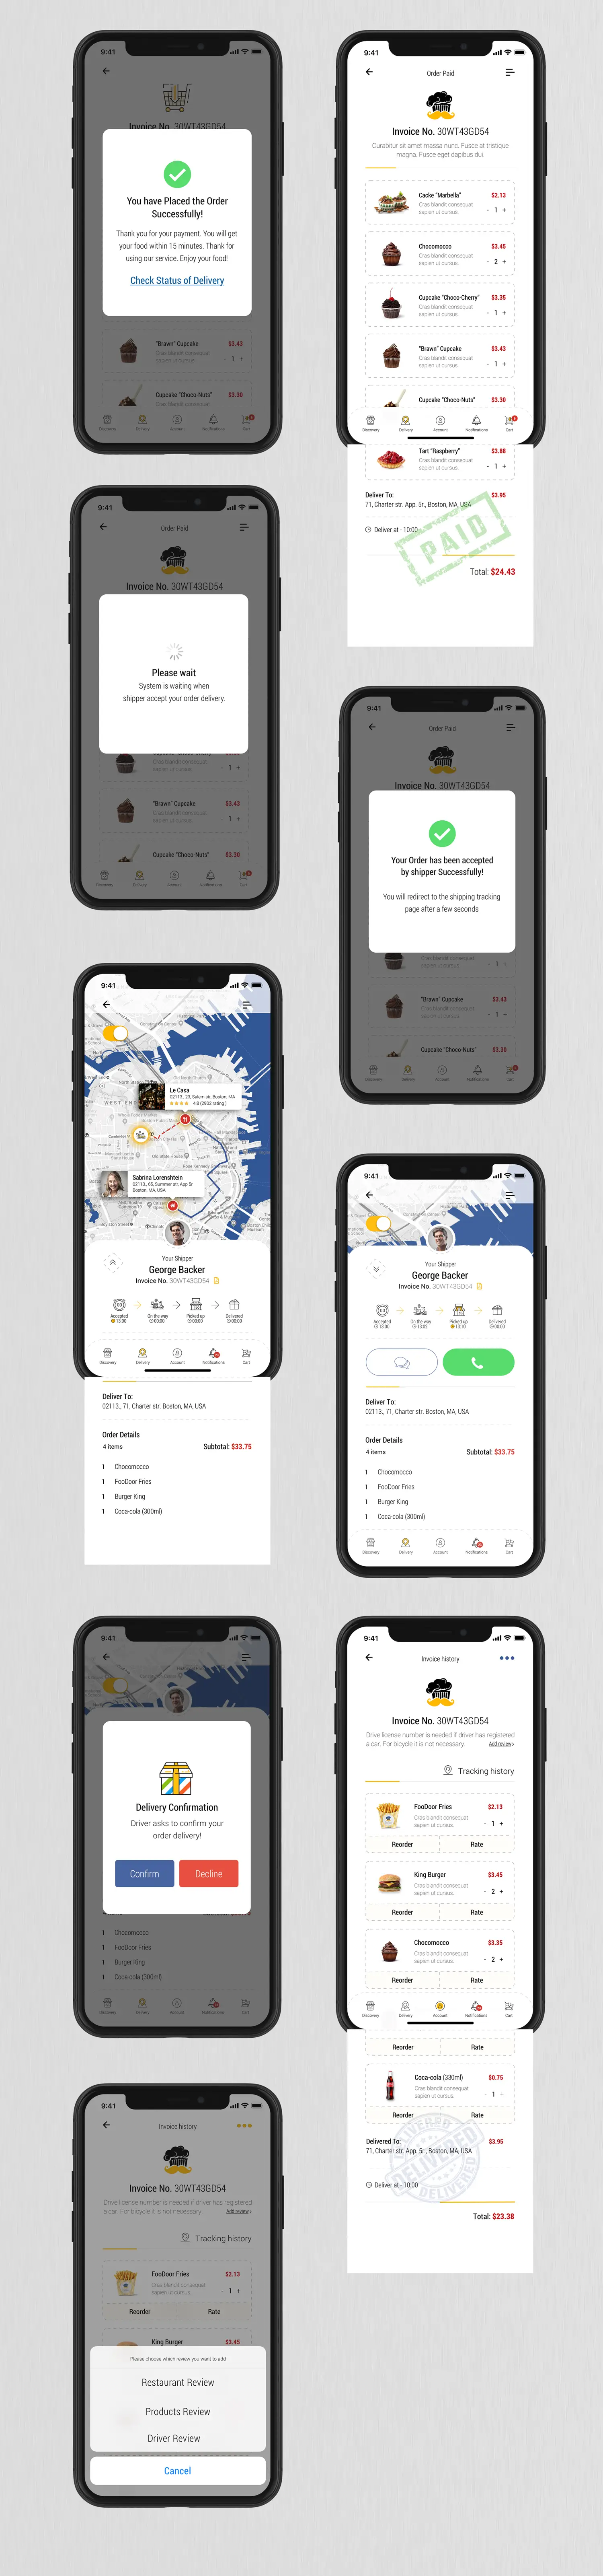 Dobule - Food Delivery UI Kit for Mobile App - 14